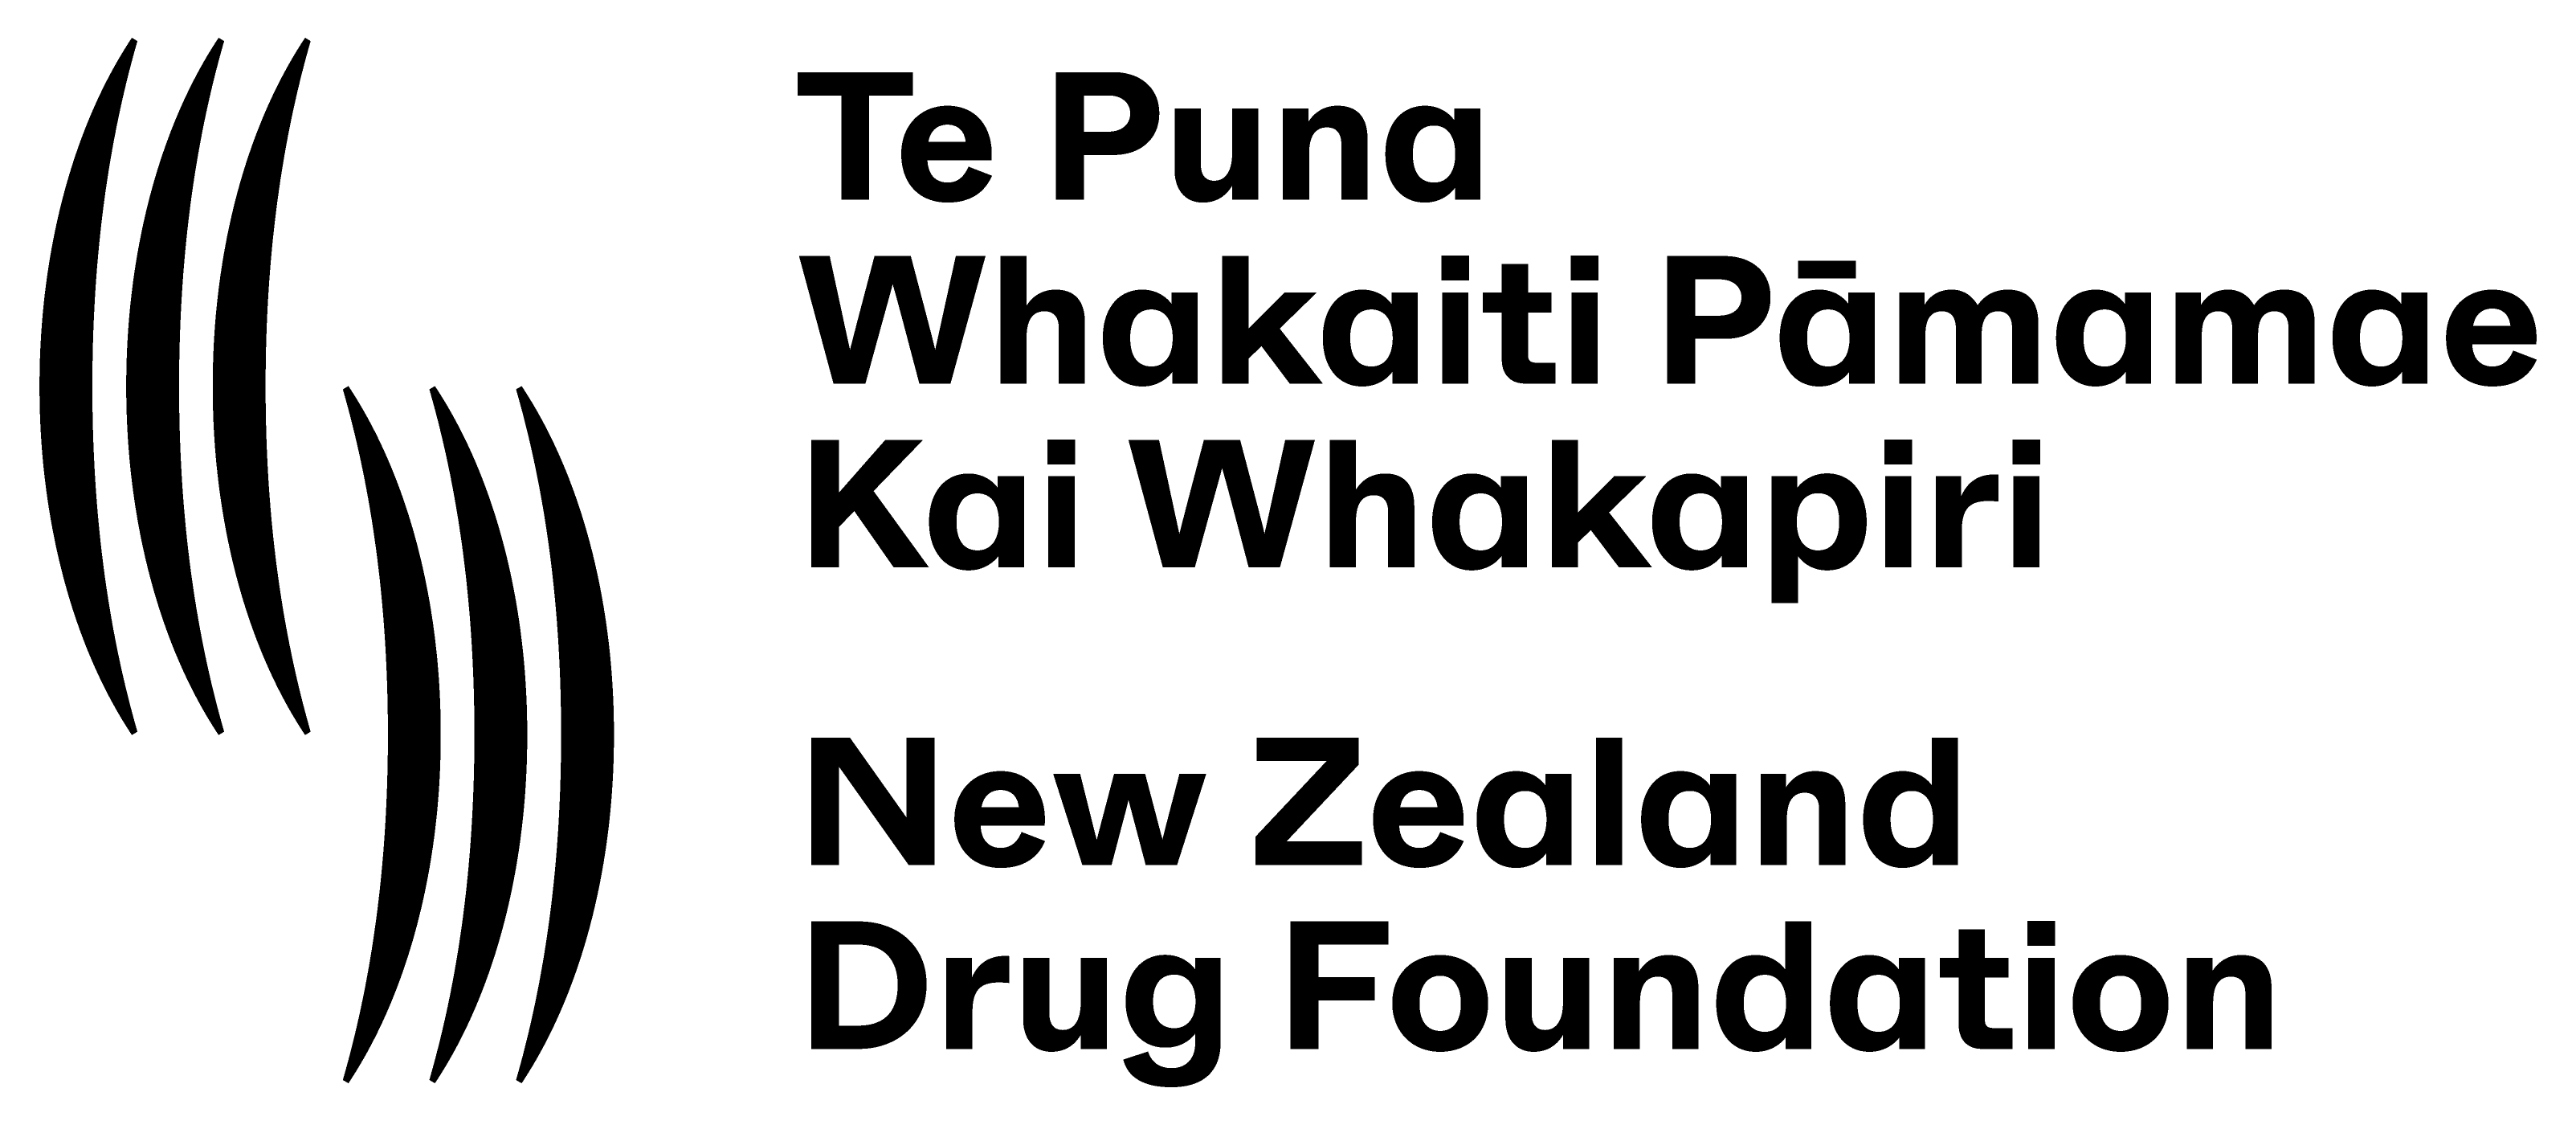 New Zealand Drug Foundation logo